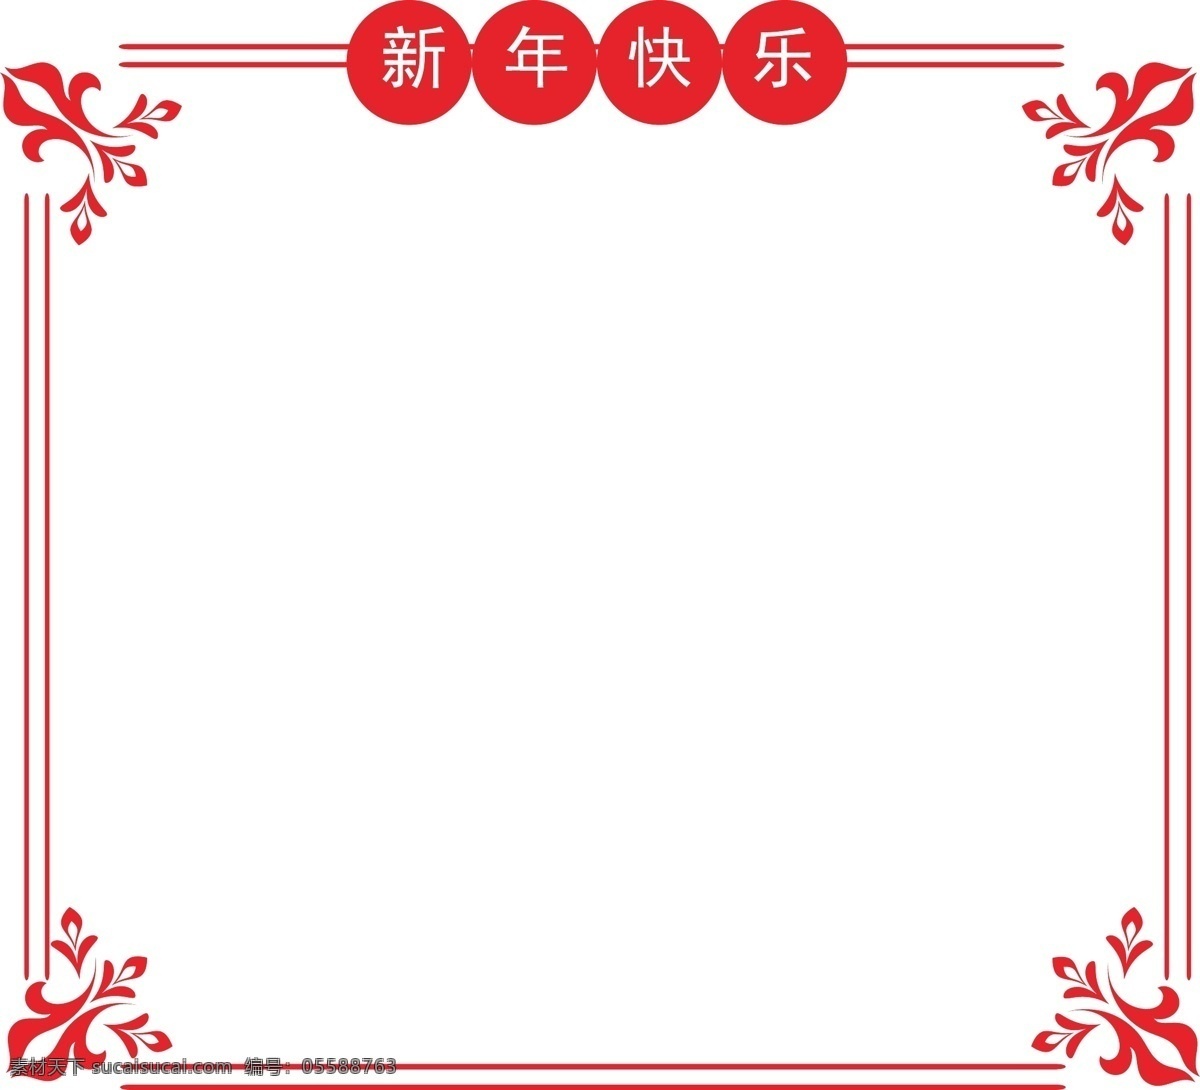 新年 快乐 线 框 插画 新年边框 手绘 正方形 边框 红色框 花纹线框 红色花纹 漂亮的线框 边框纹理